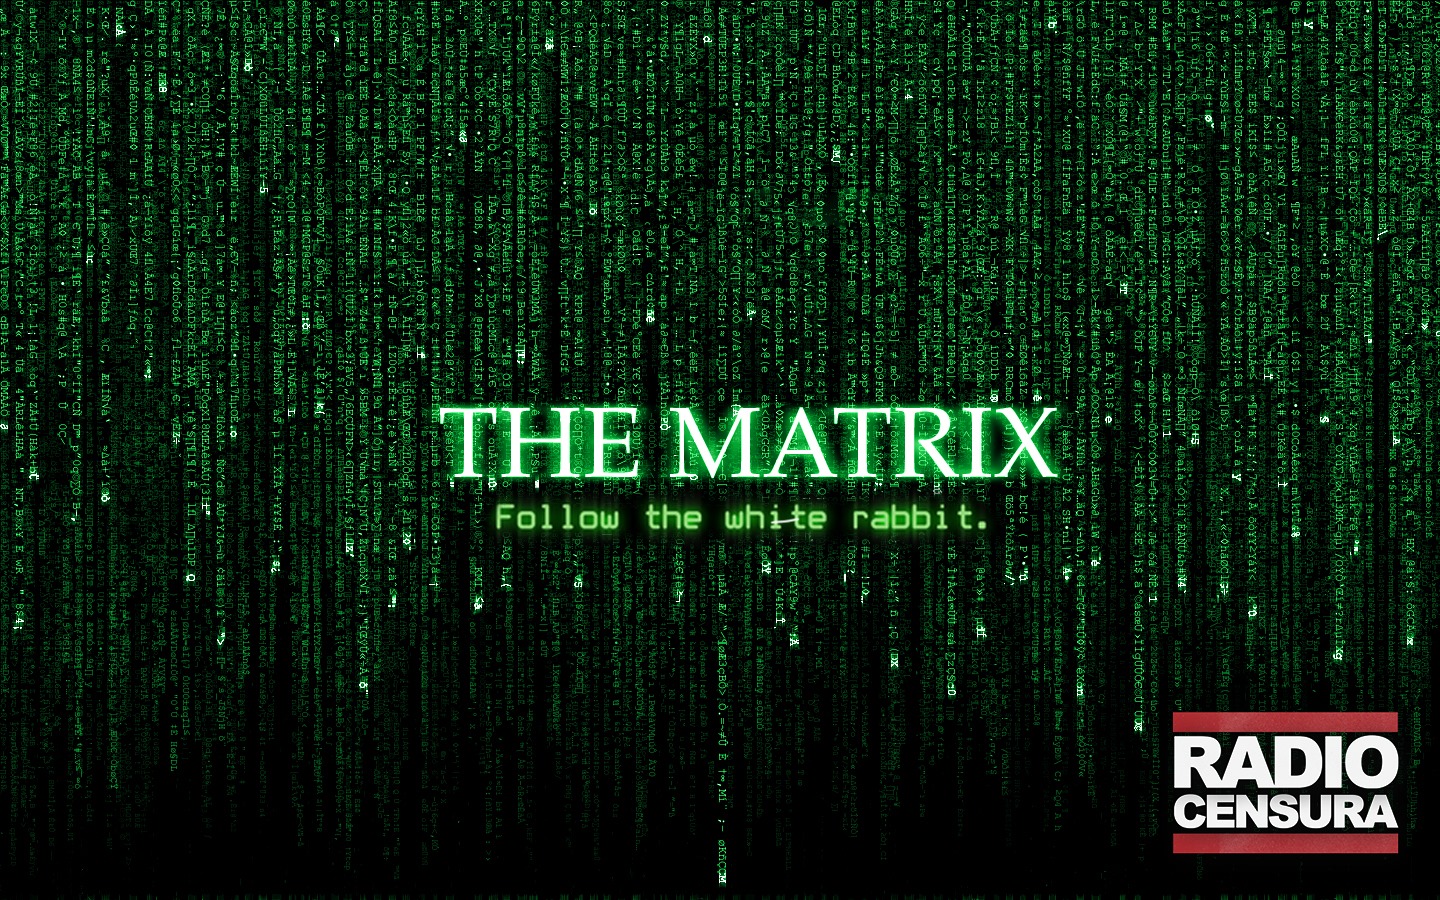 The Matrix 20 aniversario «Sigue al conejo blanco»